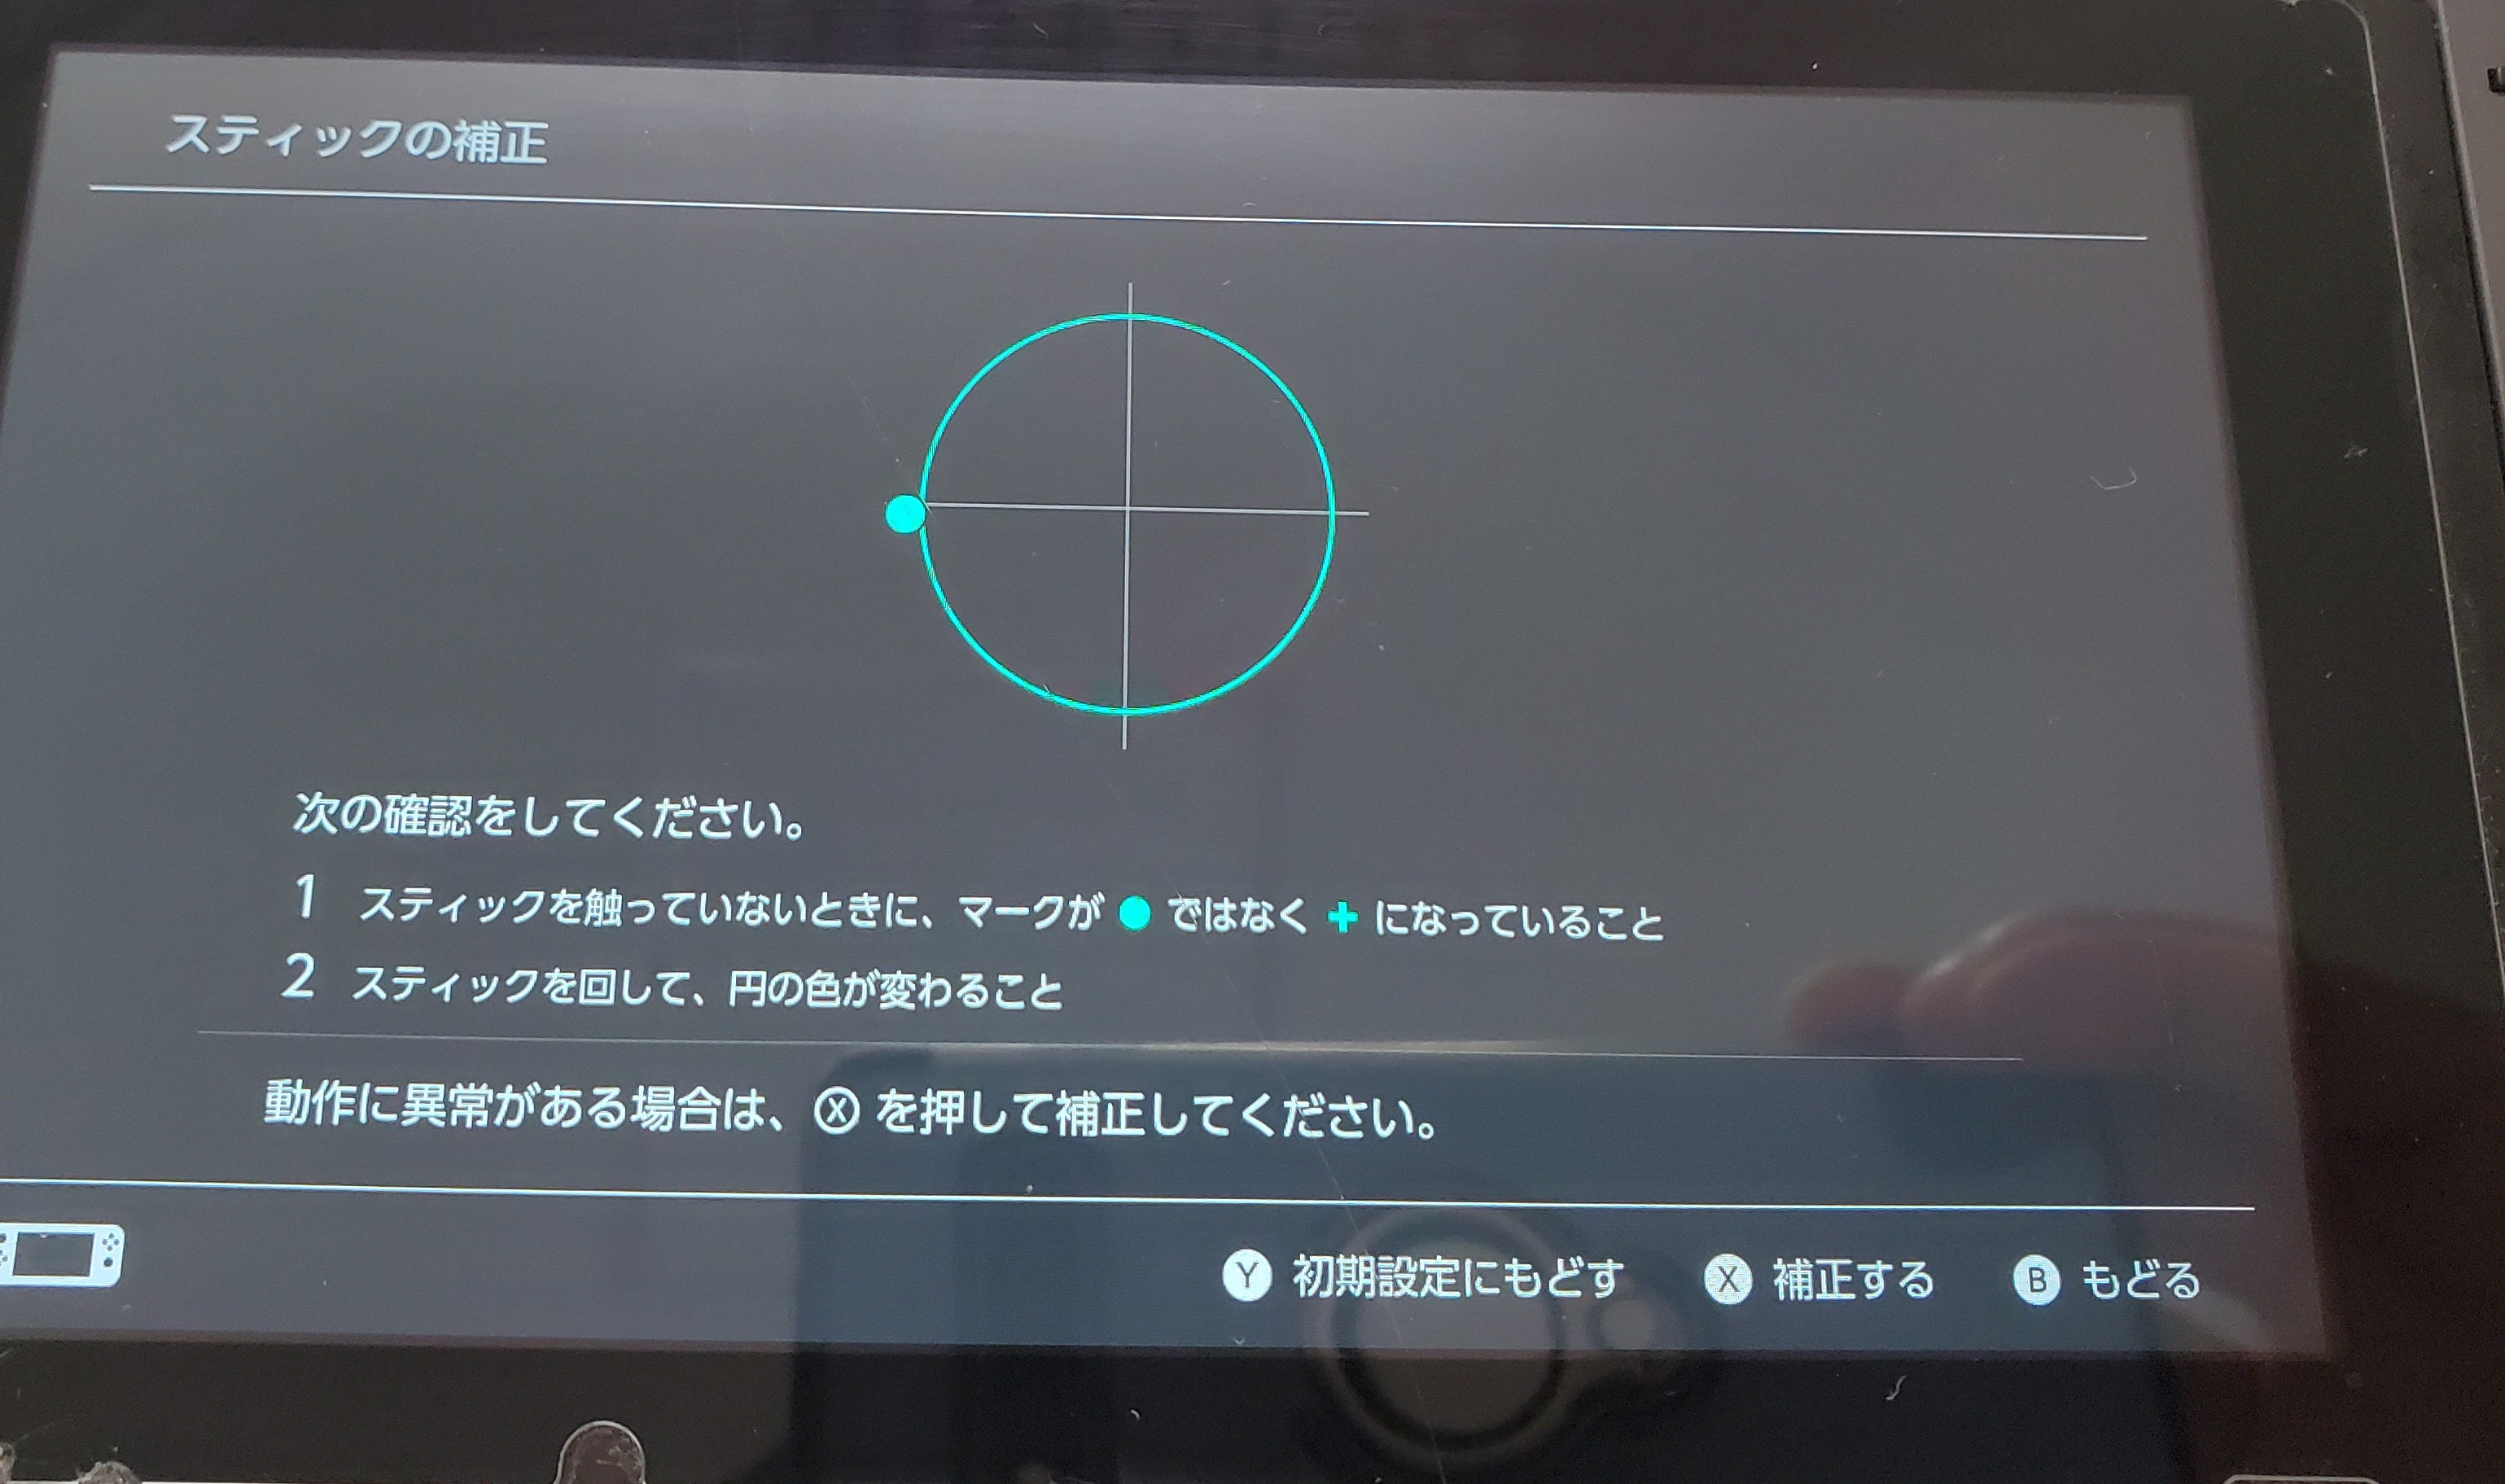 フォートナイト キャラクターが勝手に動く Nintendo3ds Switch Psp 修理のゲームホスピタル Nintendo3ds ニンテンドーds Psp Switch 修理